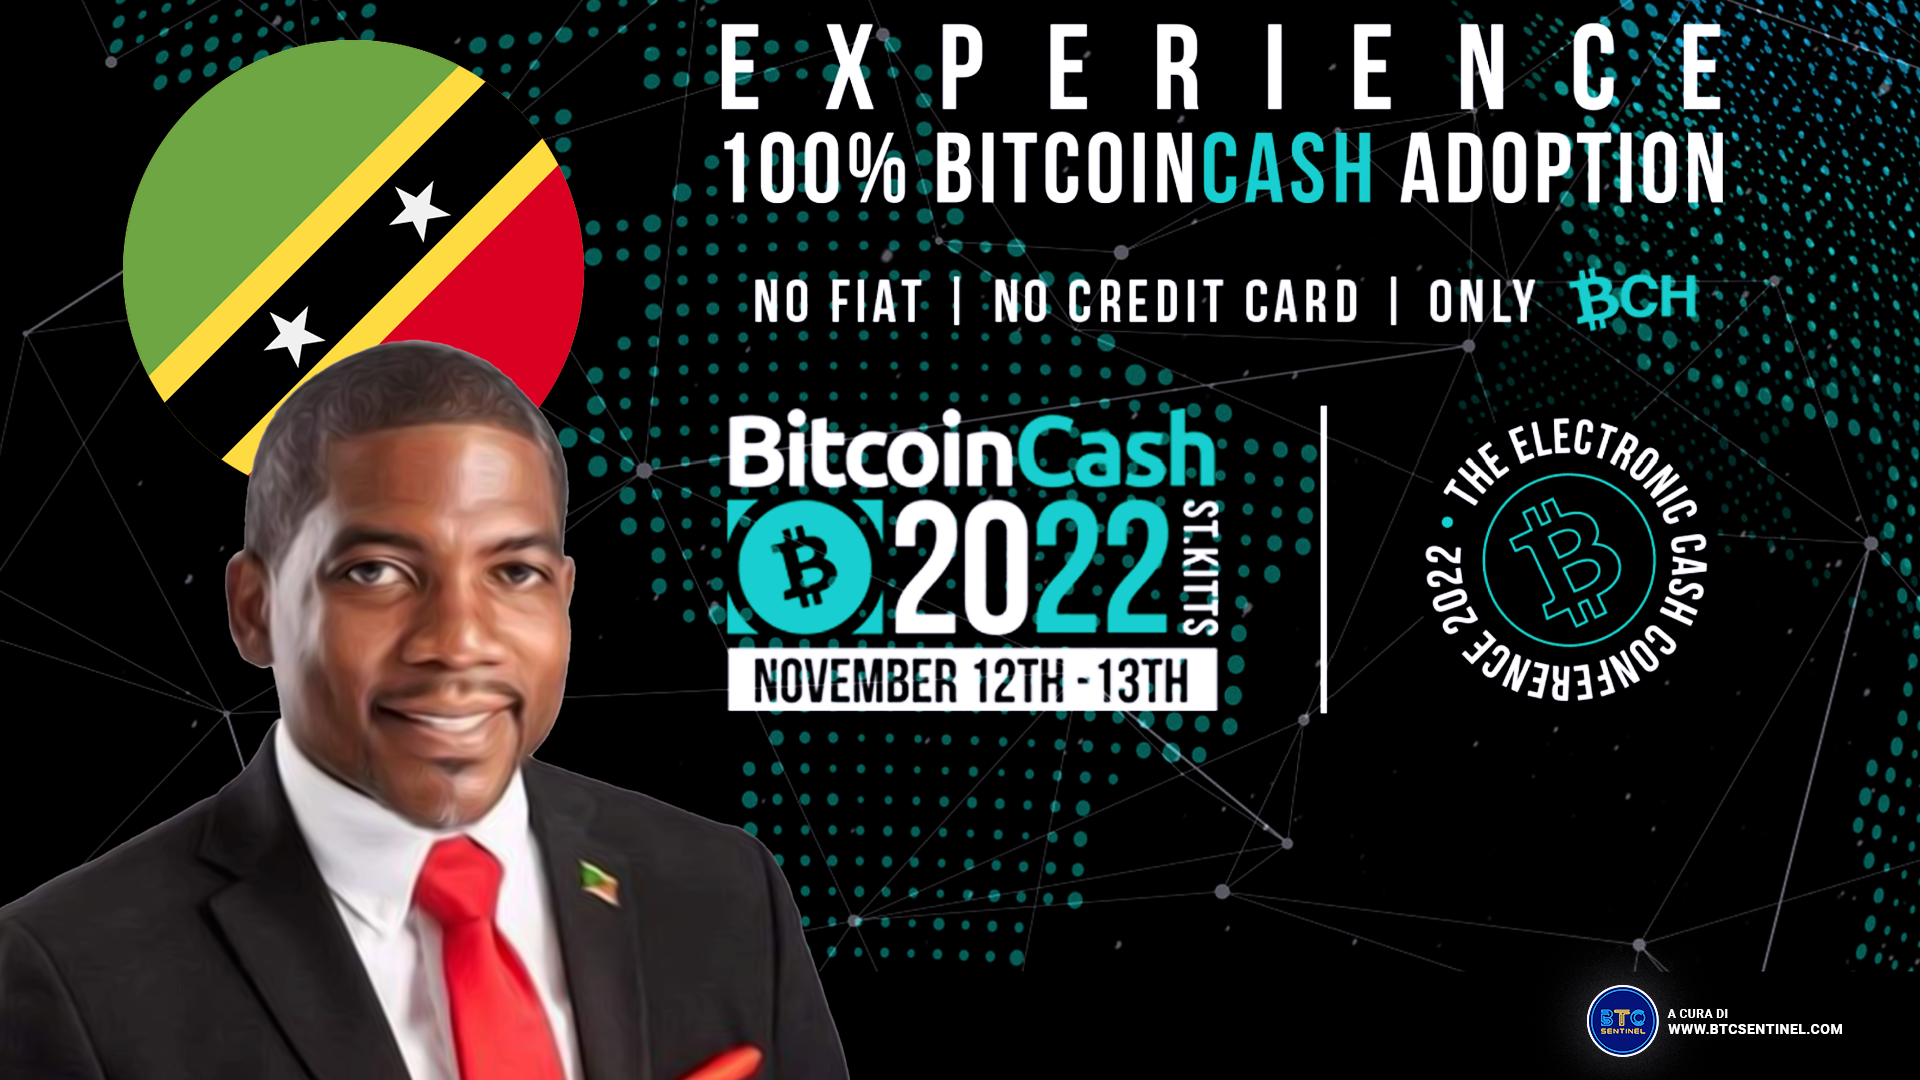 La Federazione di Saint Kitts e Nevis valuta di rendere legale Bitcoin Cash entro marzo 2023